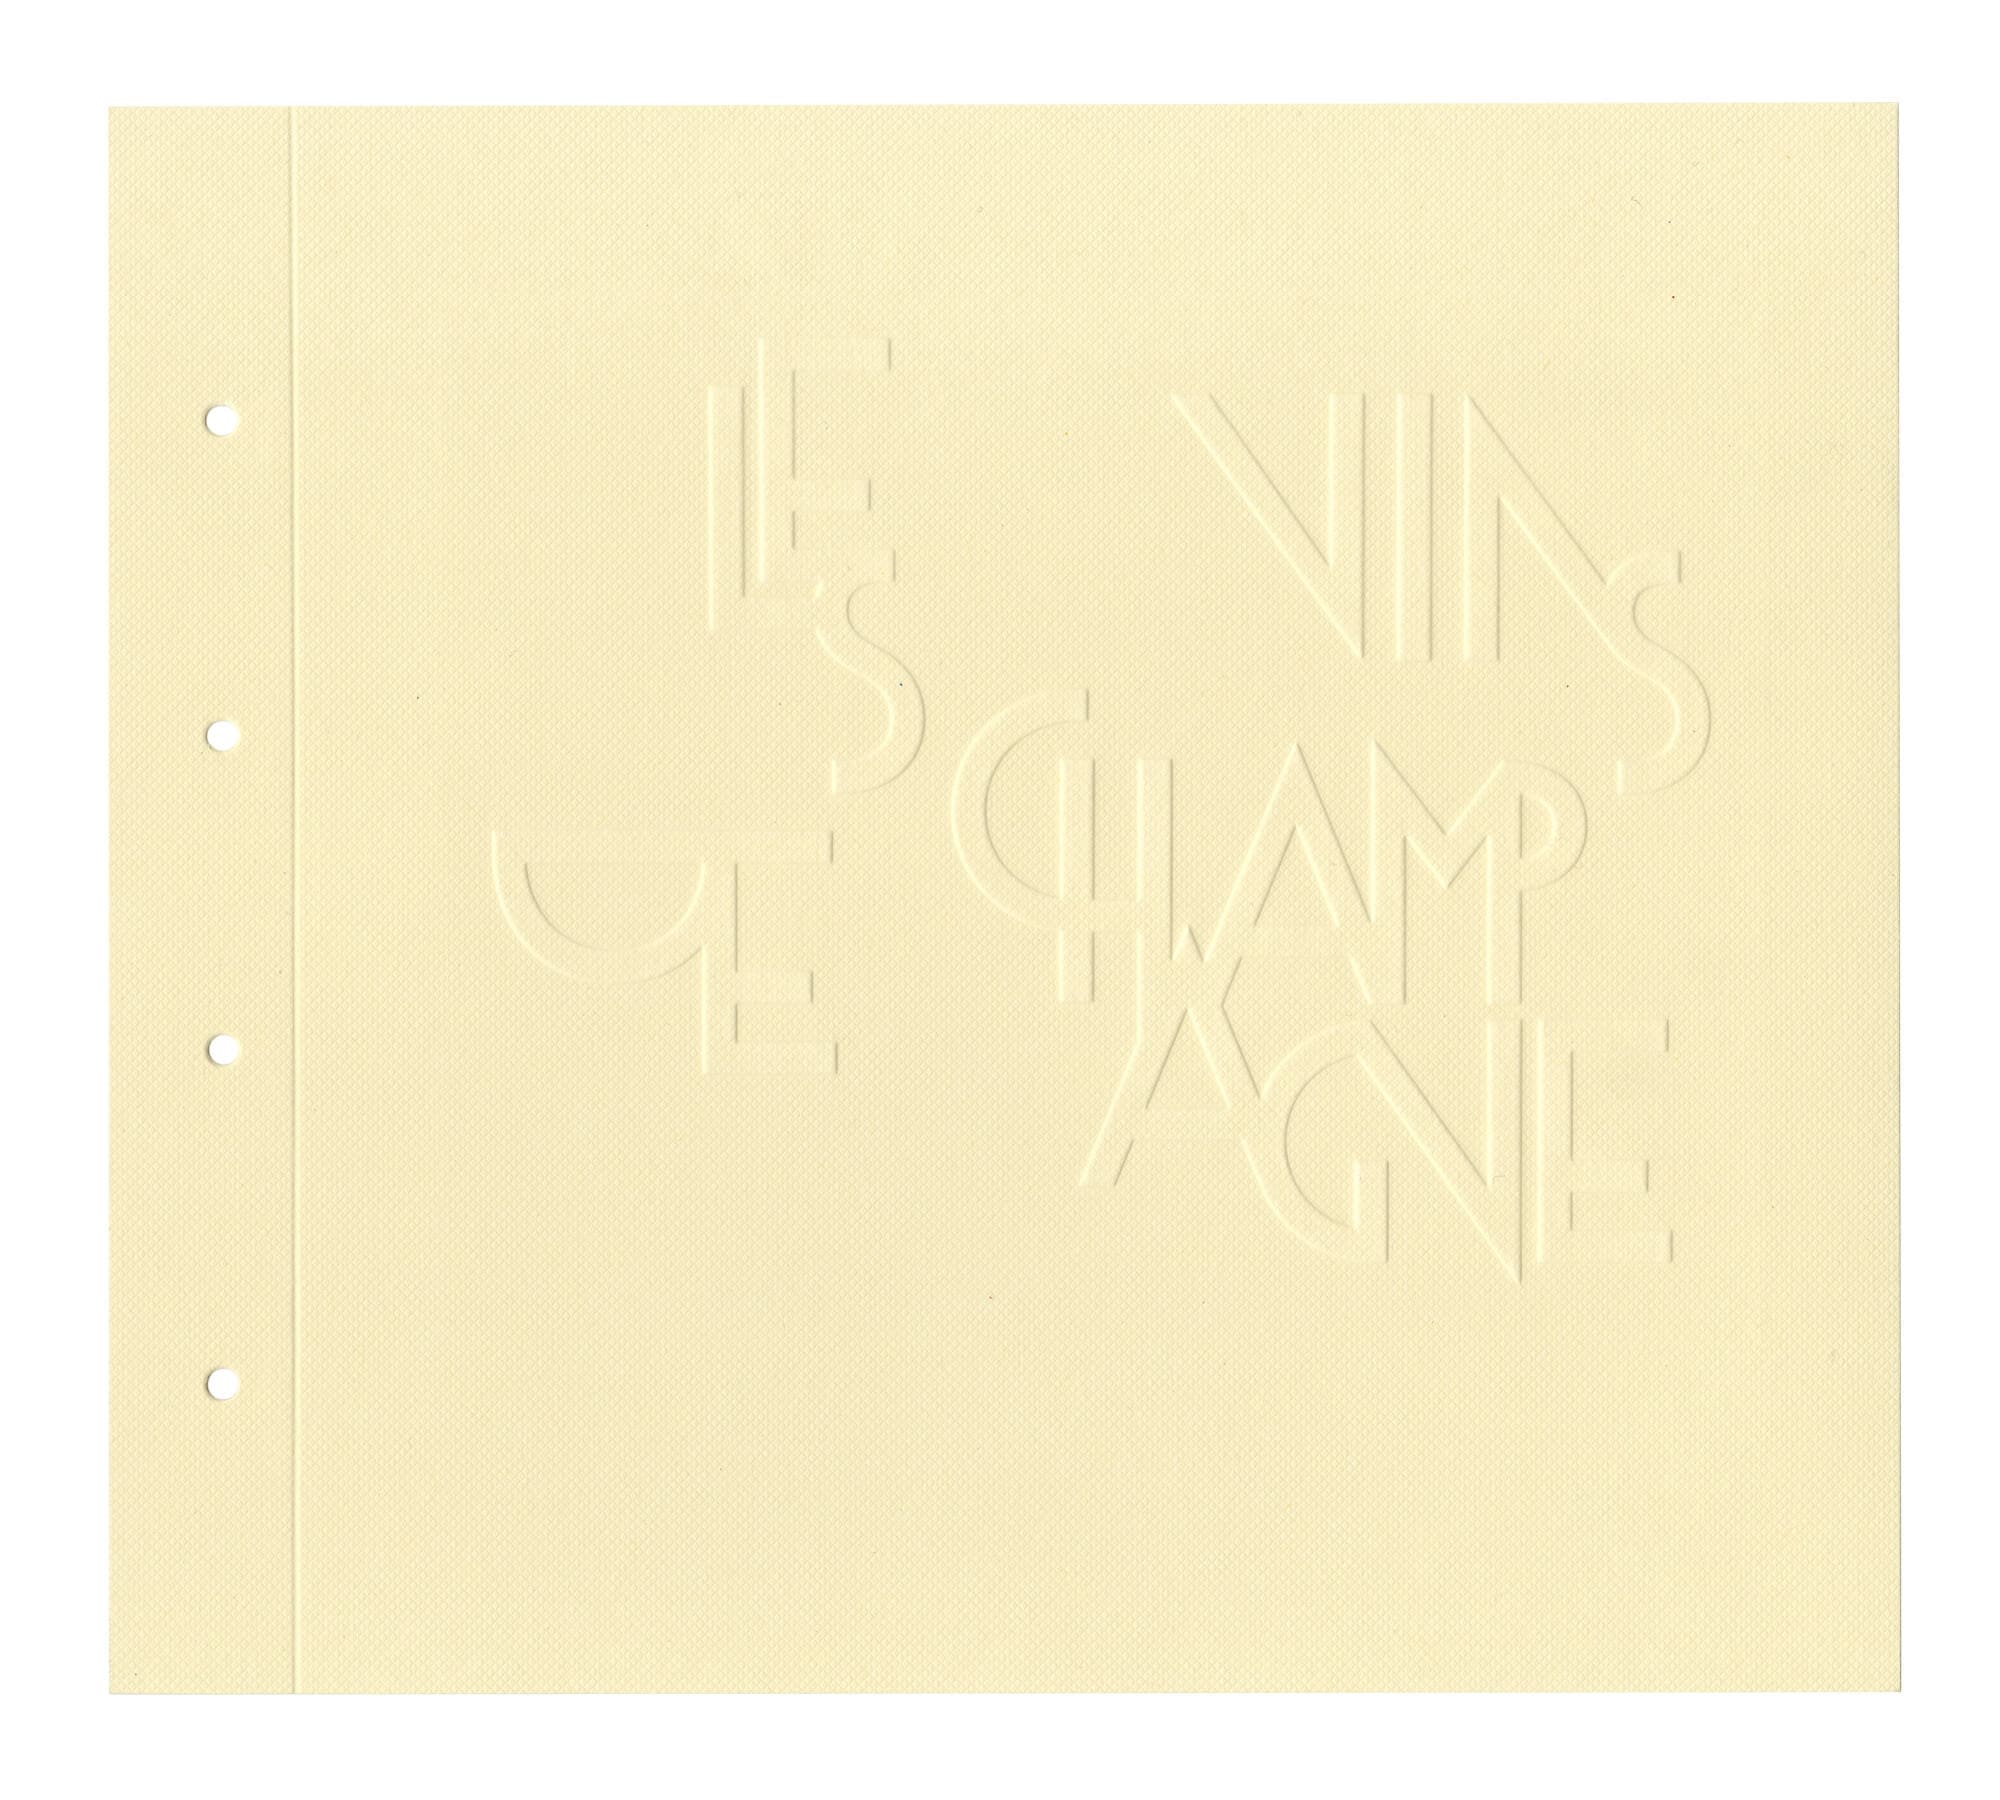 Composition typographique gaufrés pour la tête de chapitre des vins de champagne signé IchetKar pour le restaurant Blazac de Pierre Gagnaire